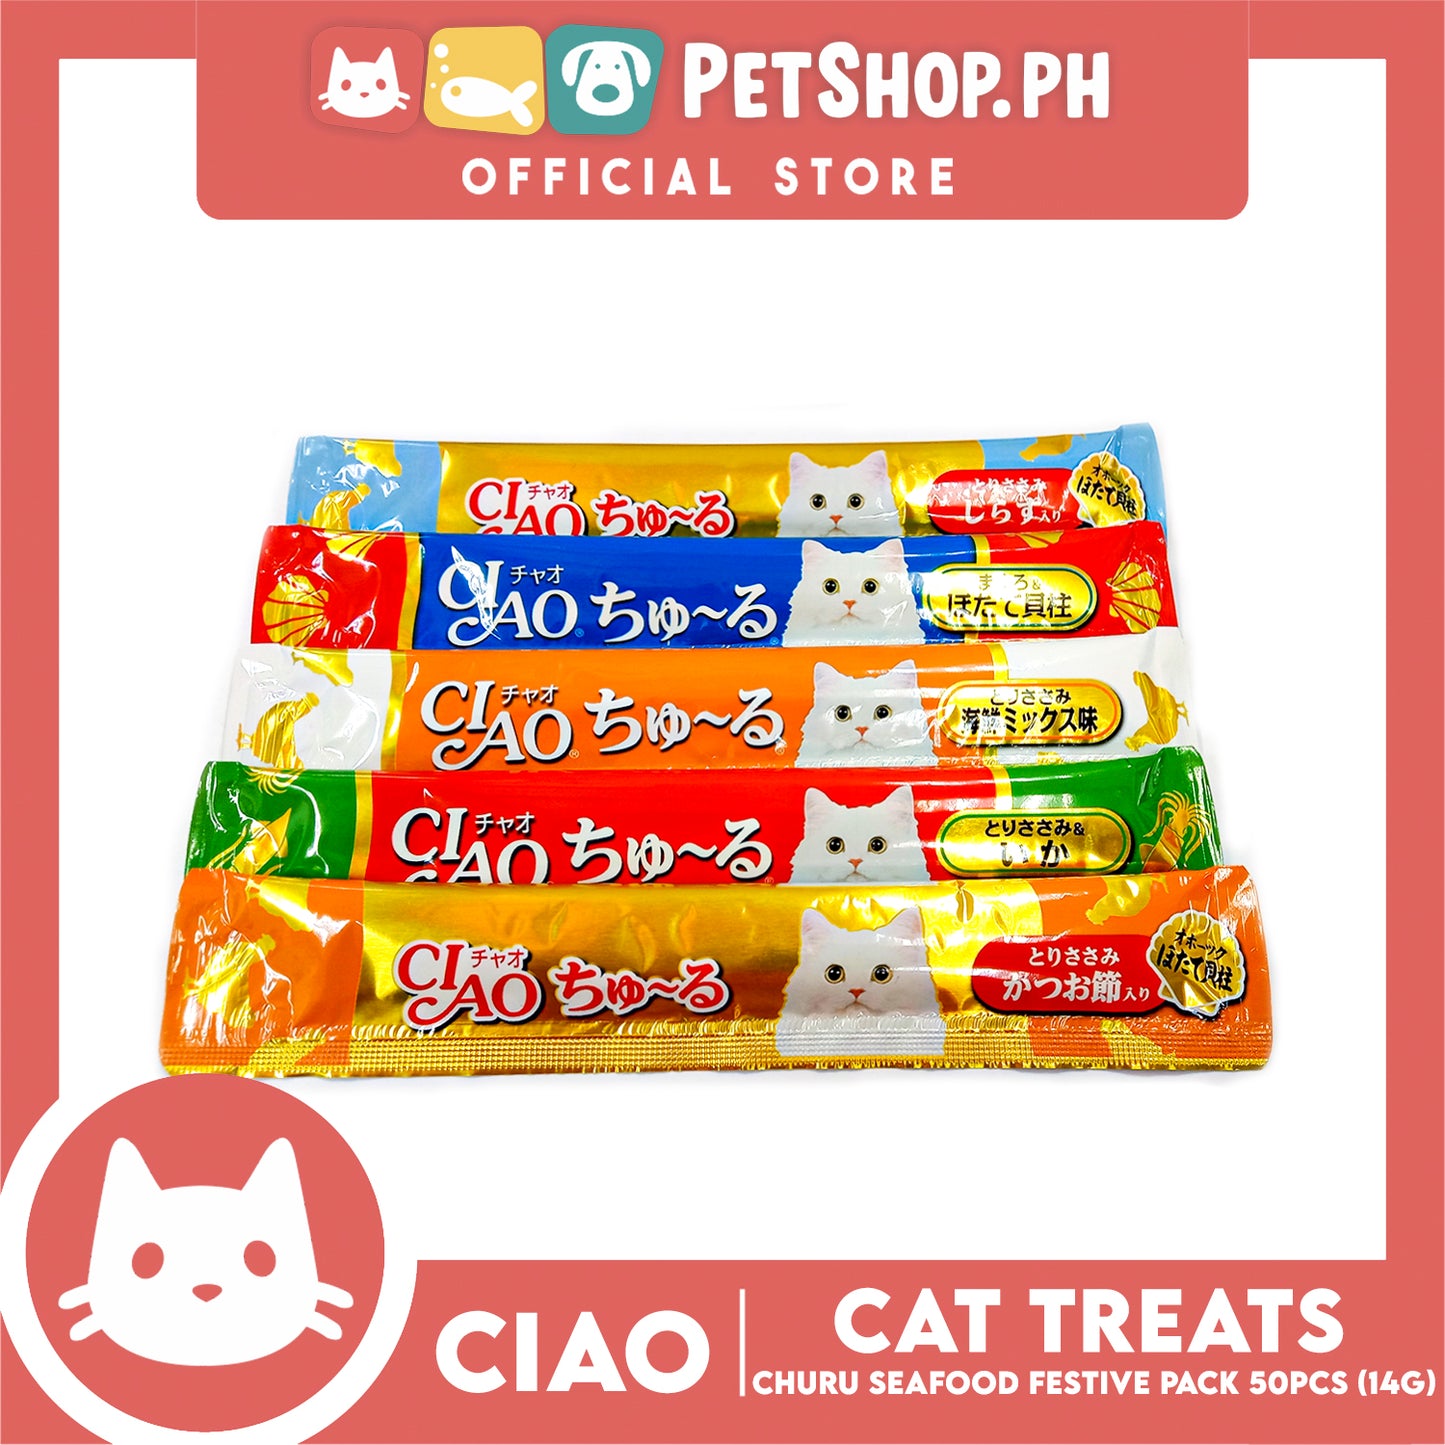 Ciao Churu Seafood Festive Pack Jar Variety Flavors, Cat Treats (TSC-13T) 14g x 50pcs